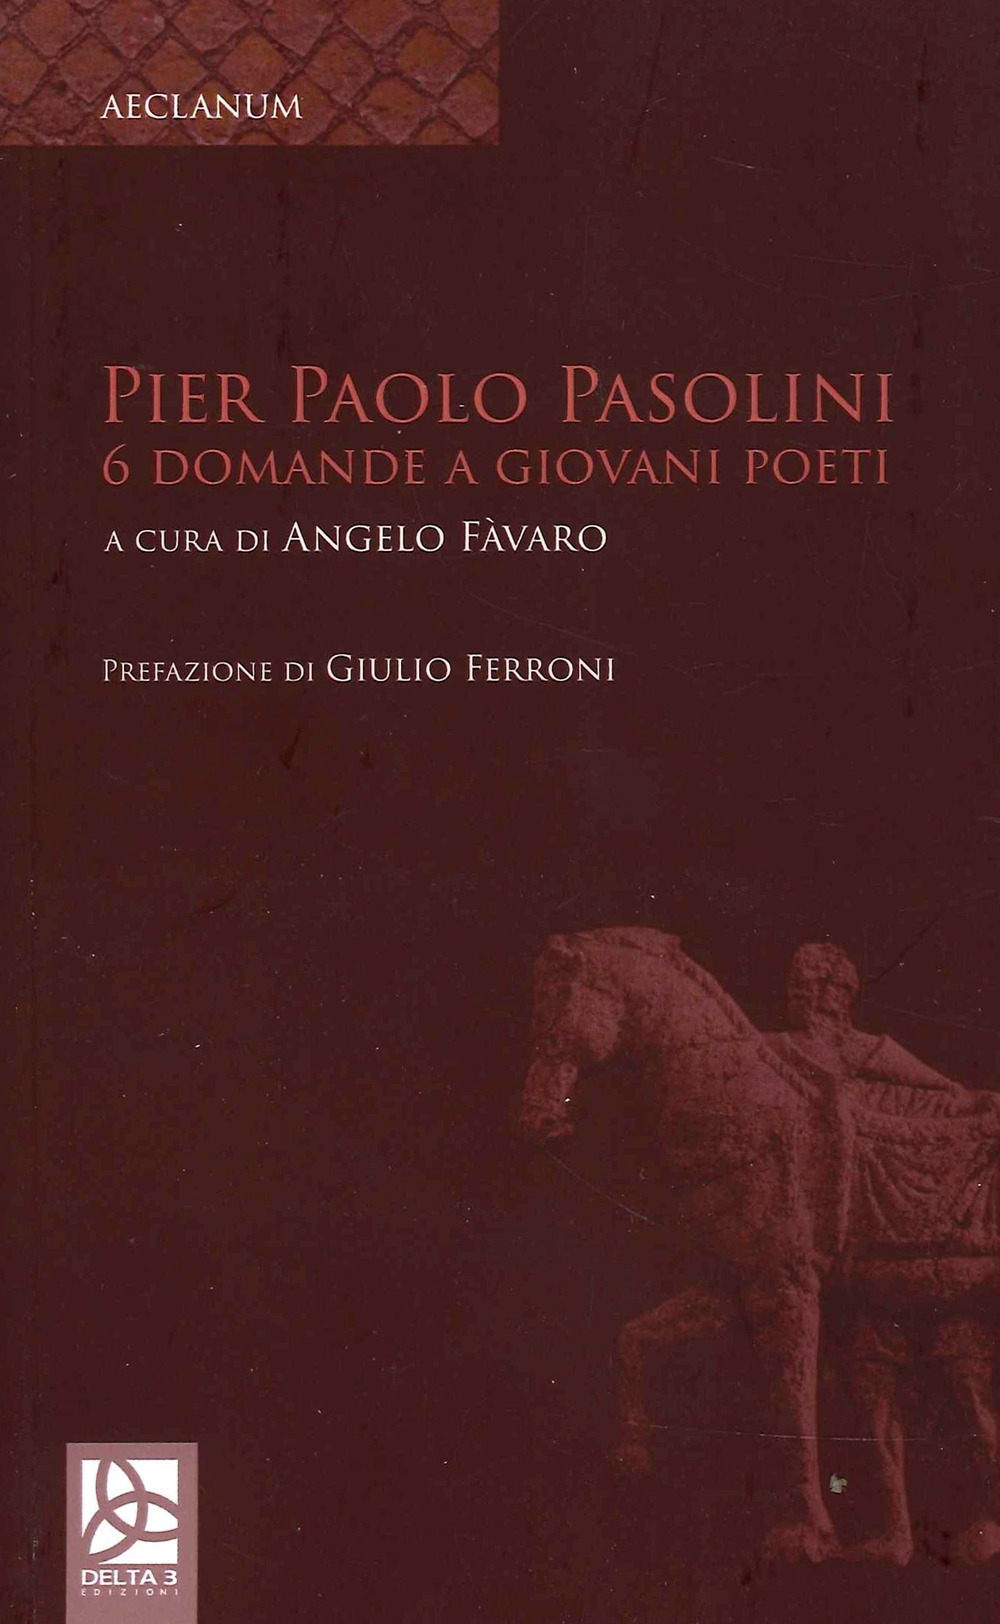 Pier Paolo Pasolini. 6 Domande a giovani poeti